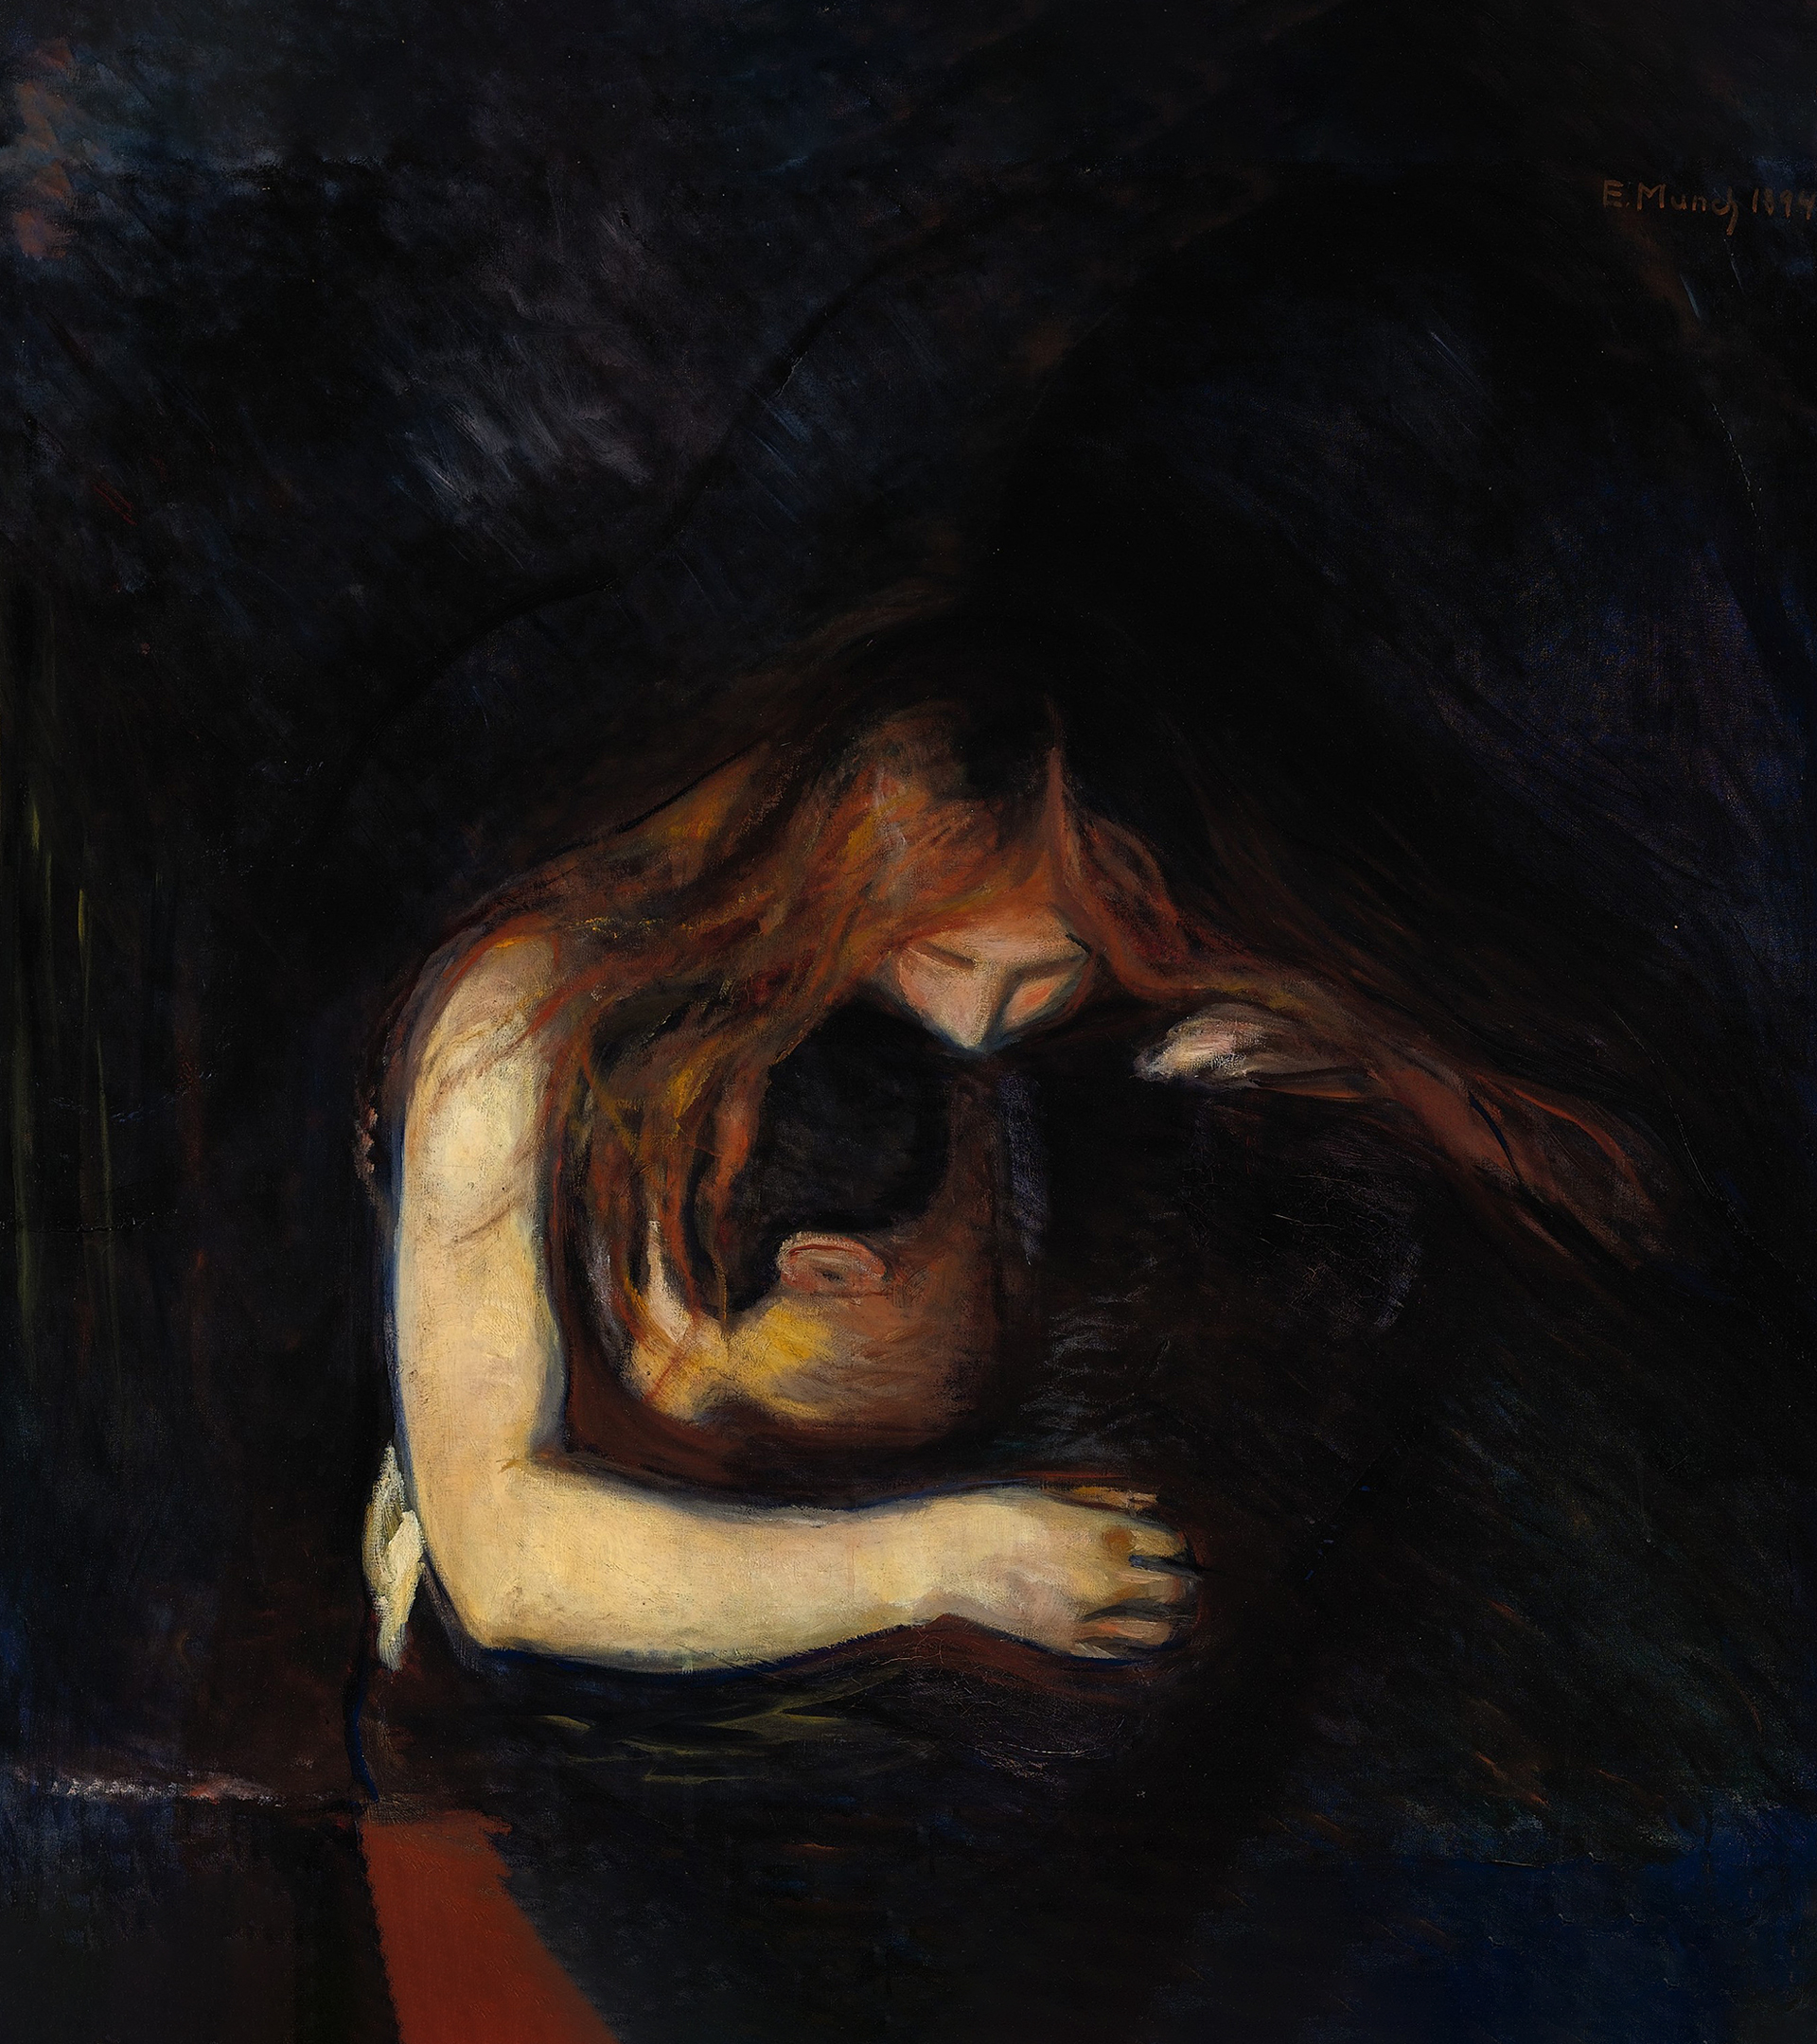 Cuadro de Edvard Munch fechado en 1894 que refleja el consuelo del amor frente al dolor.